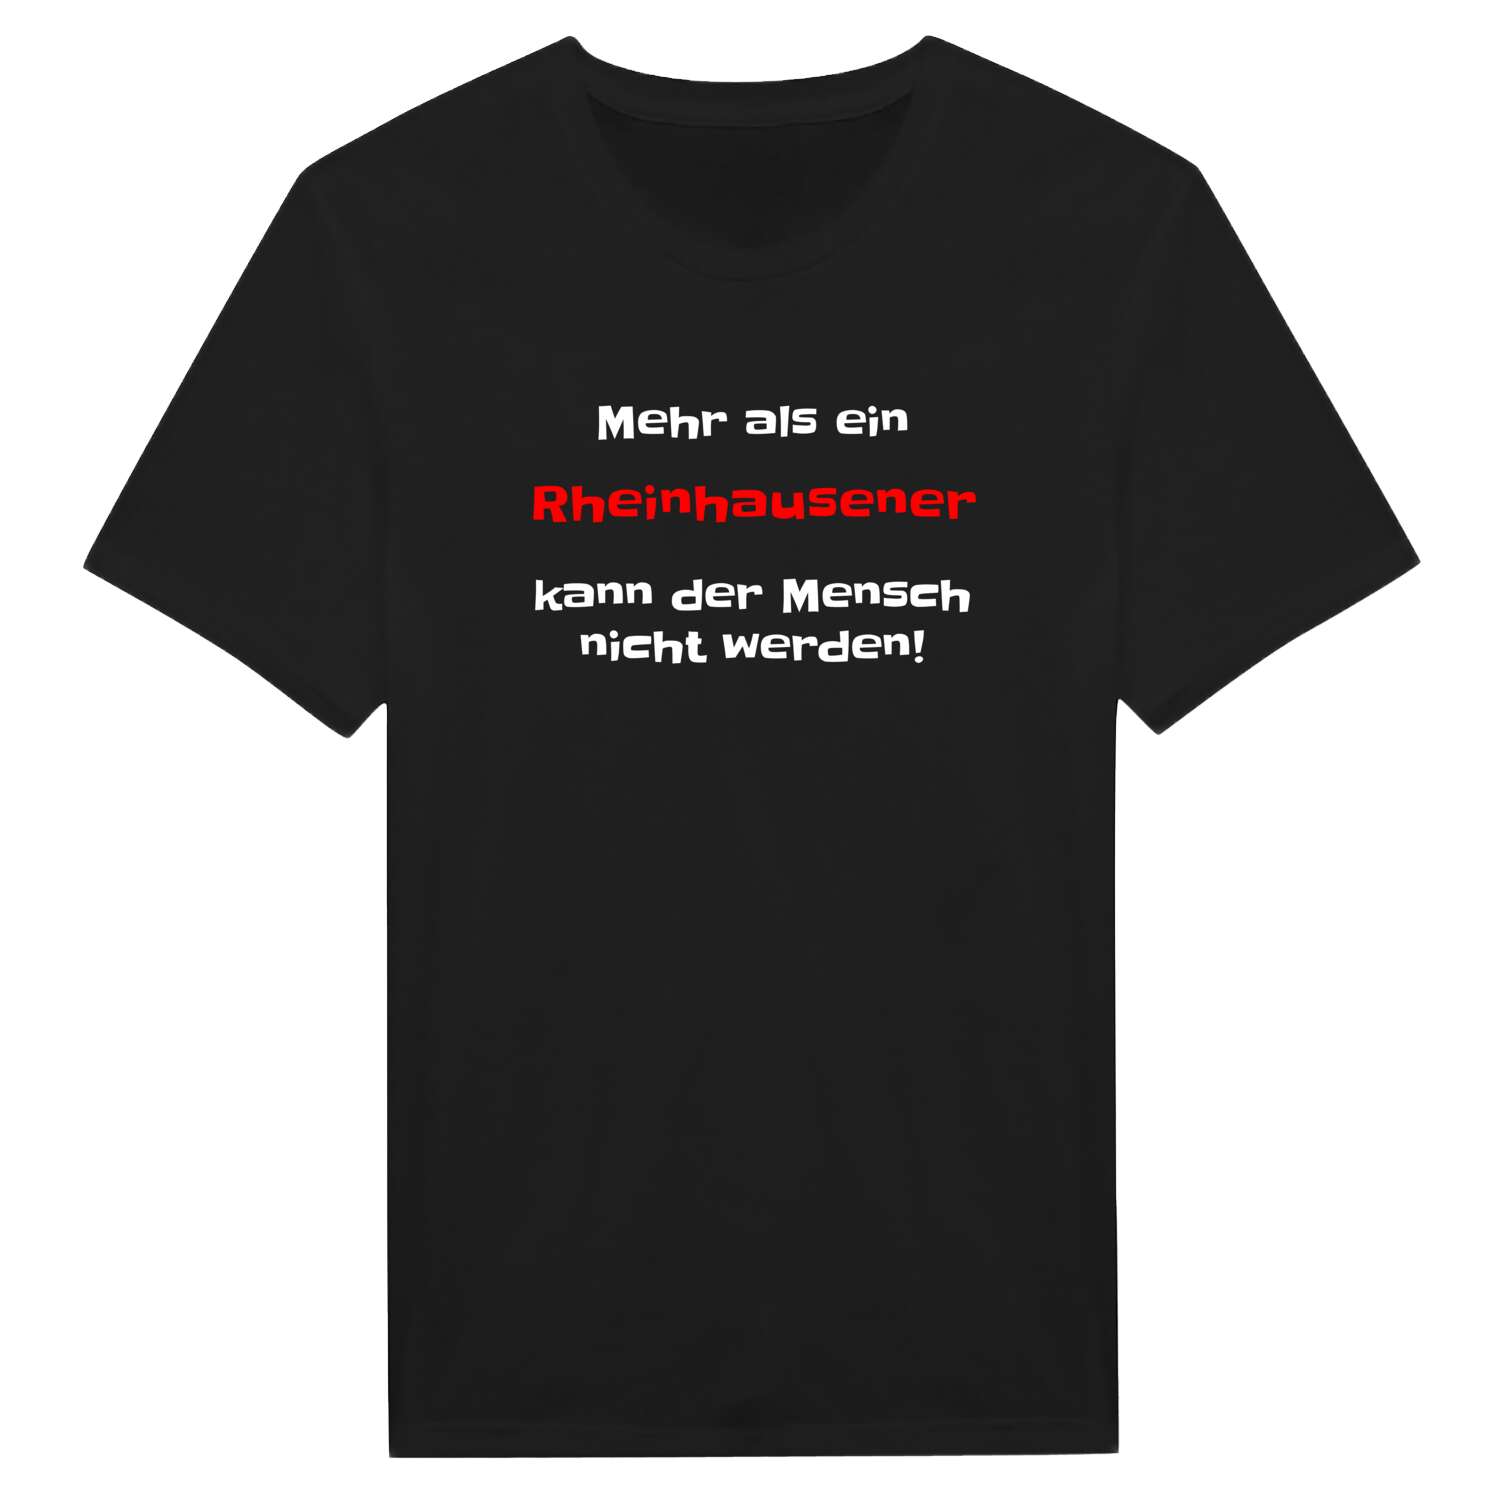 Rheinhausen T-Shirt »Mehr als ein«